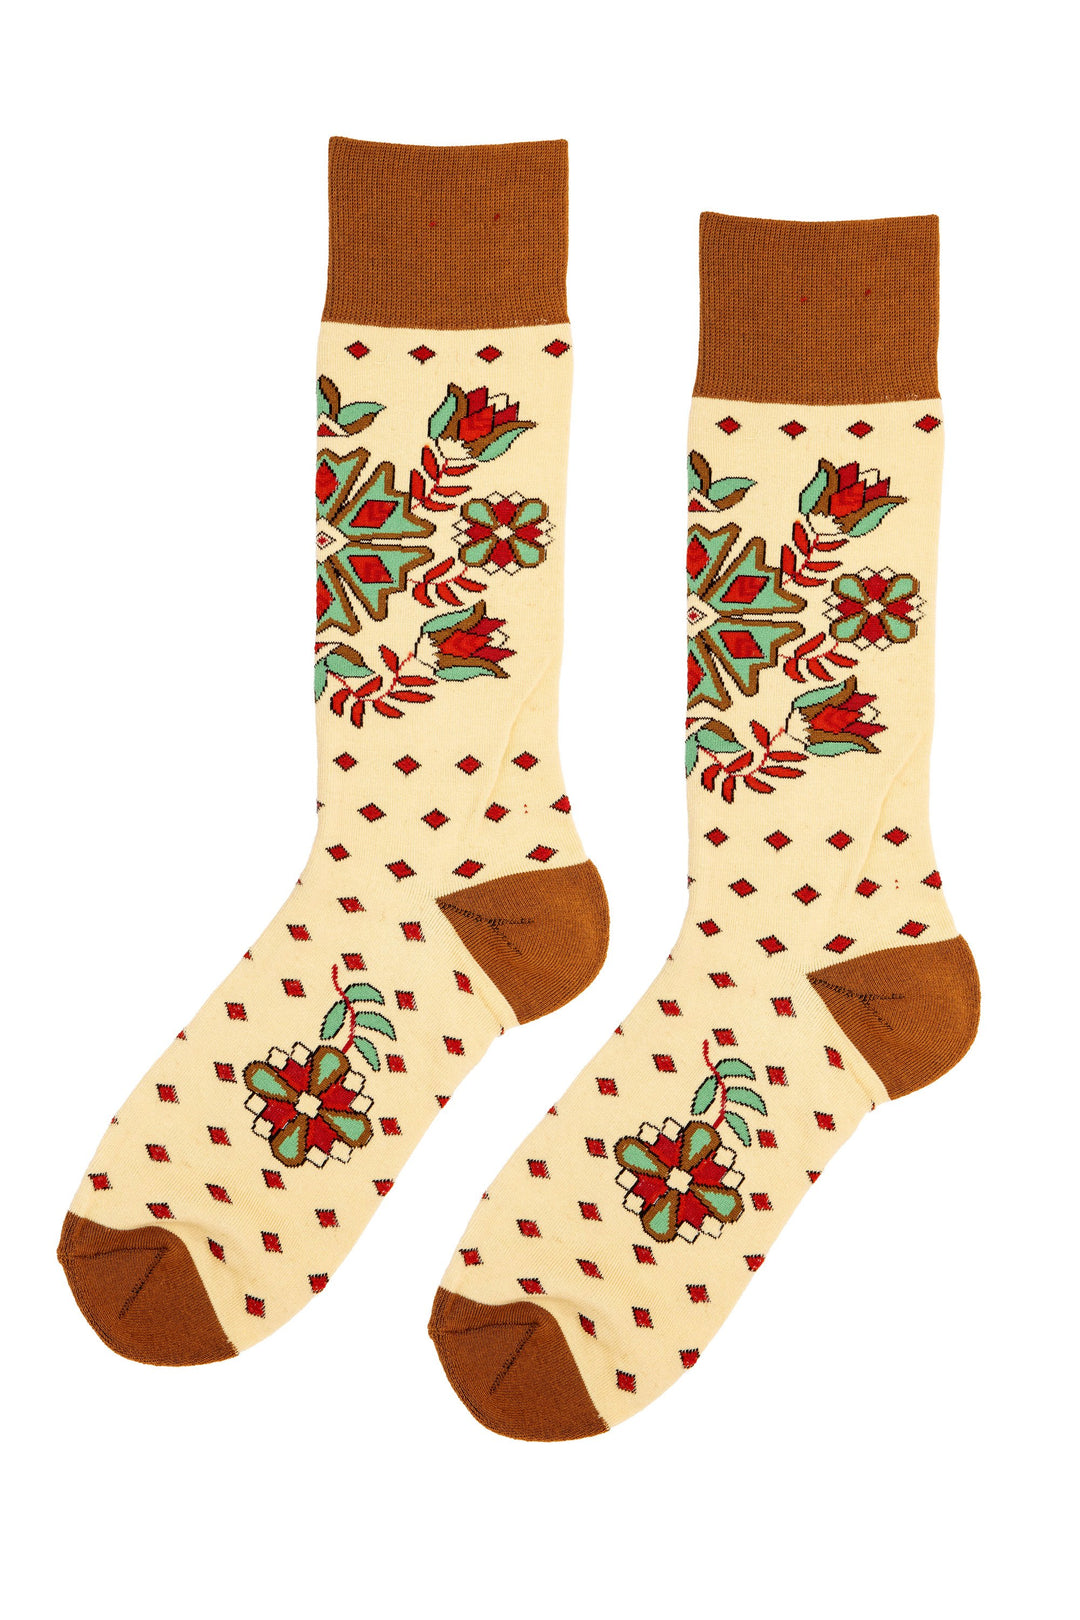 Double D Ranchwear Painted Desert Socks